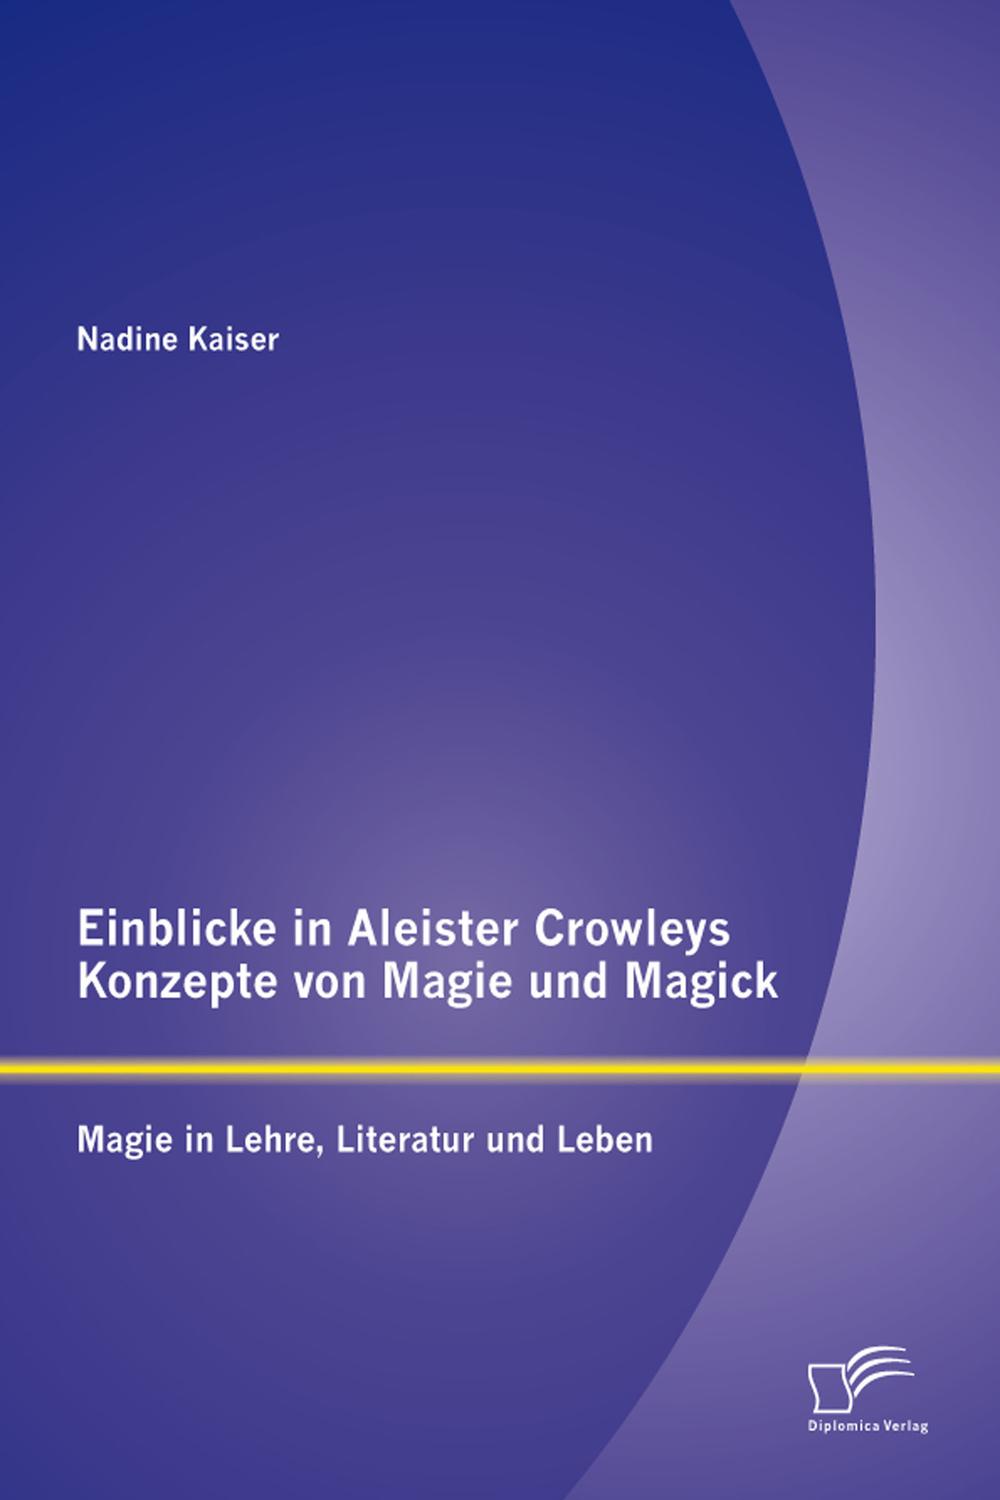 Einblicke in Aleister Crowleys Konzepte von Magie und Magick: Magie in Lehre, Literatur und Leben - Nadine Kaiser